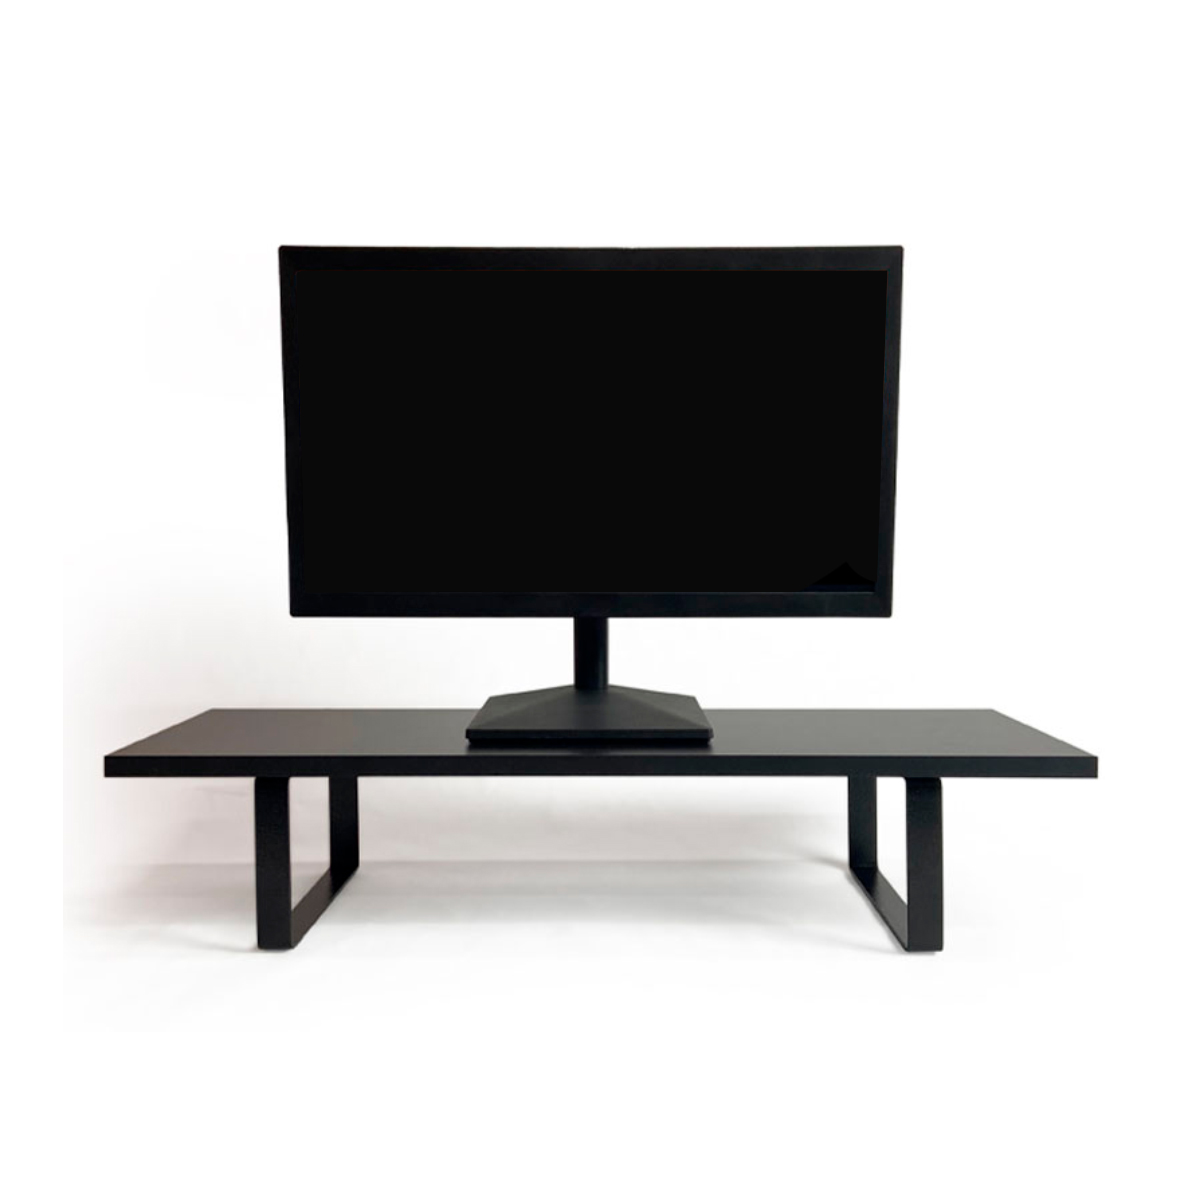 Suporte para Monitor Reliza Stand Desk - com Regulagem de Altura - Preto